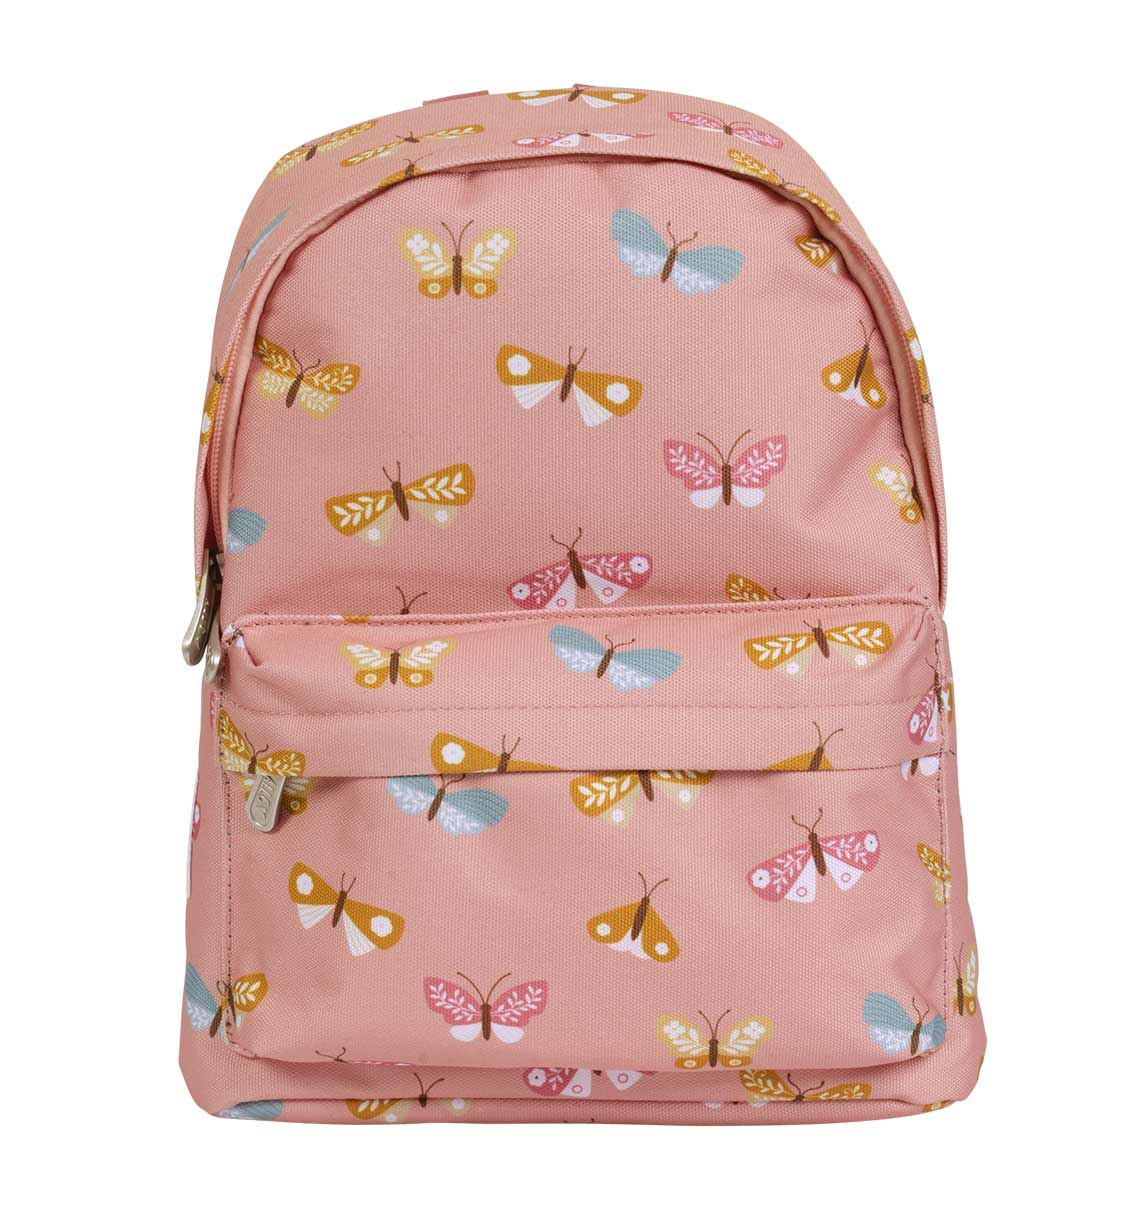 Little kids backpack: Butterflies